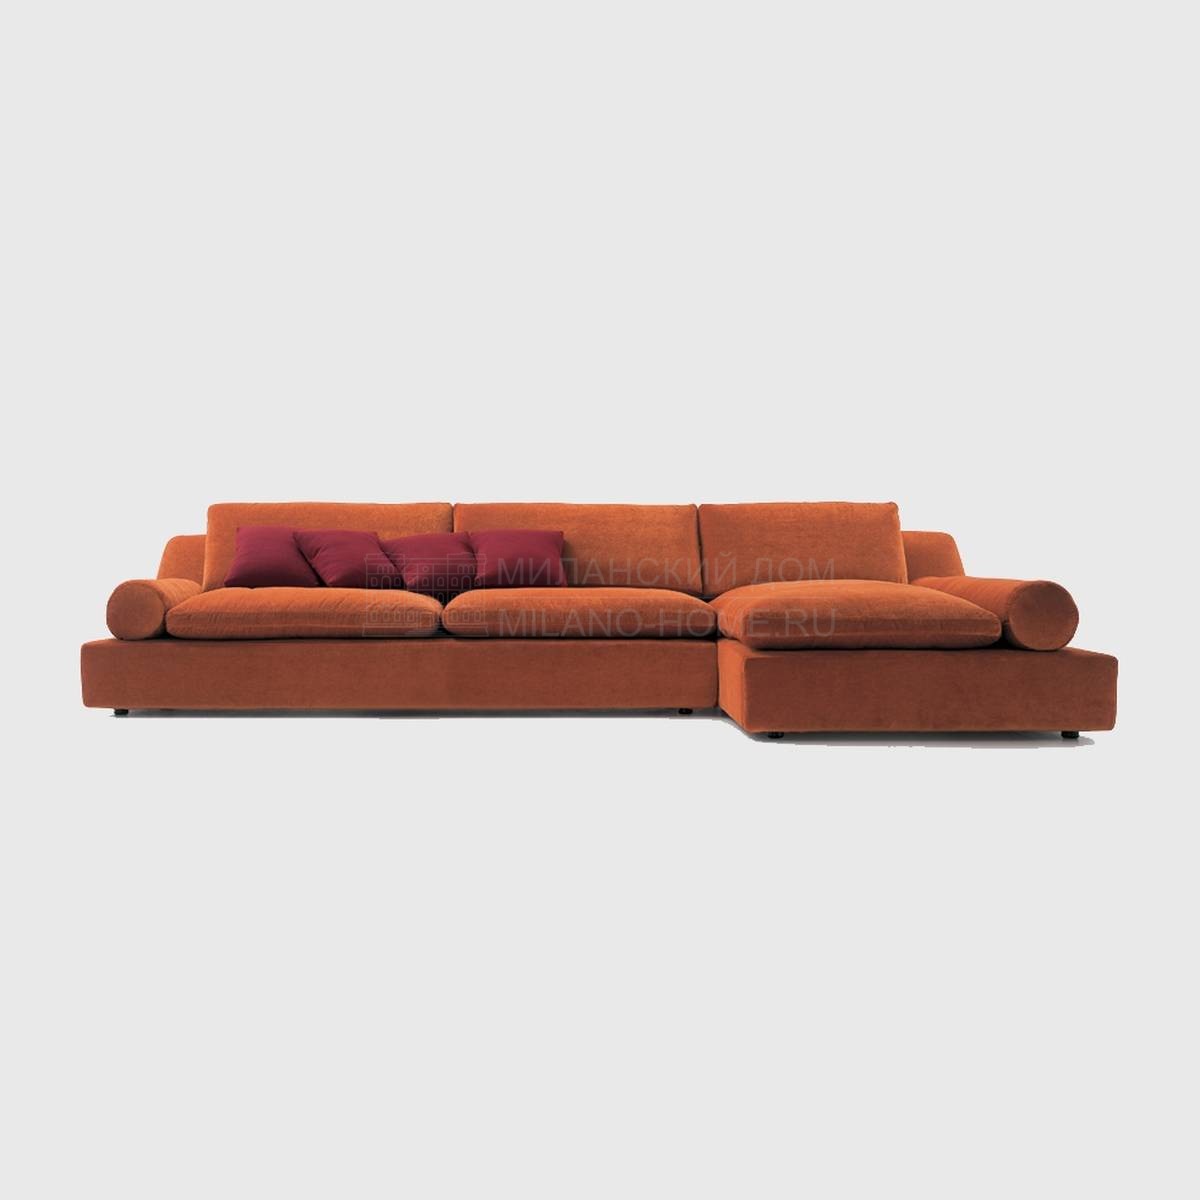 Модульный диван Tender 2/ sofa из Италии фабрики NUBE